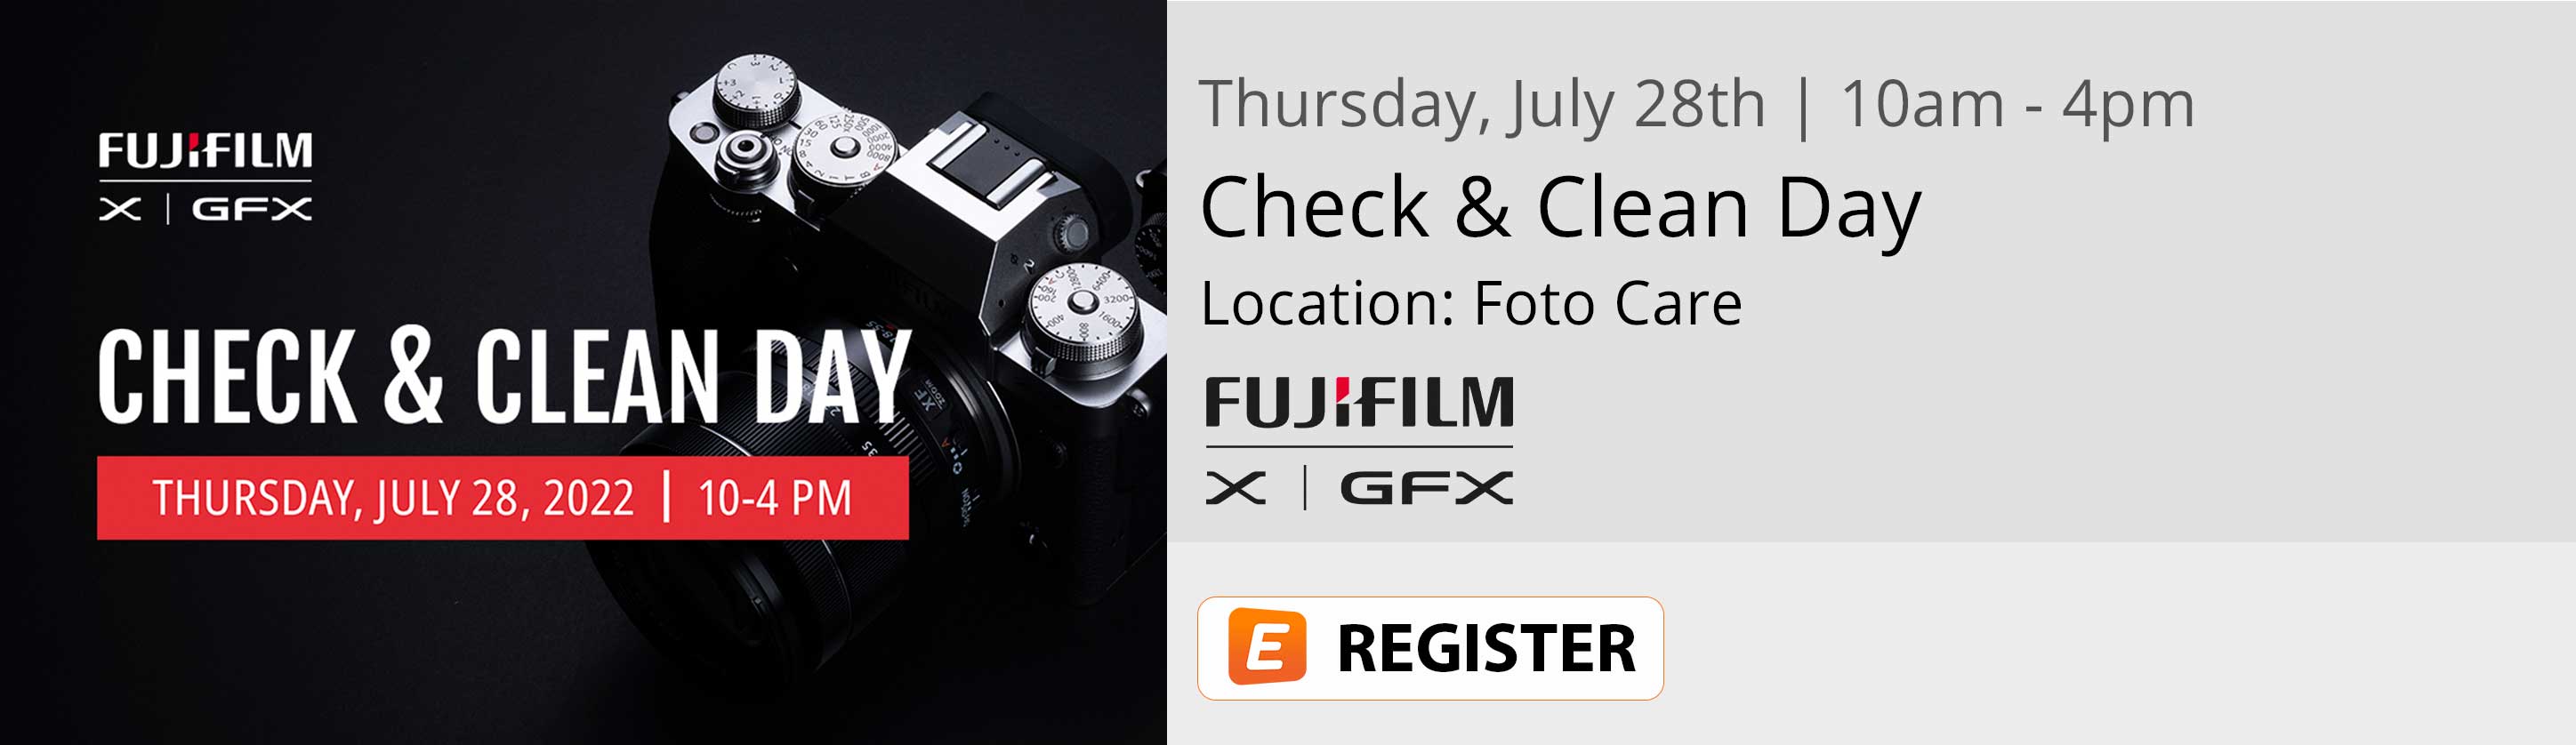 Fujifilm Check & Clean